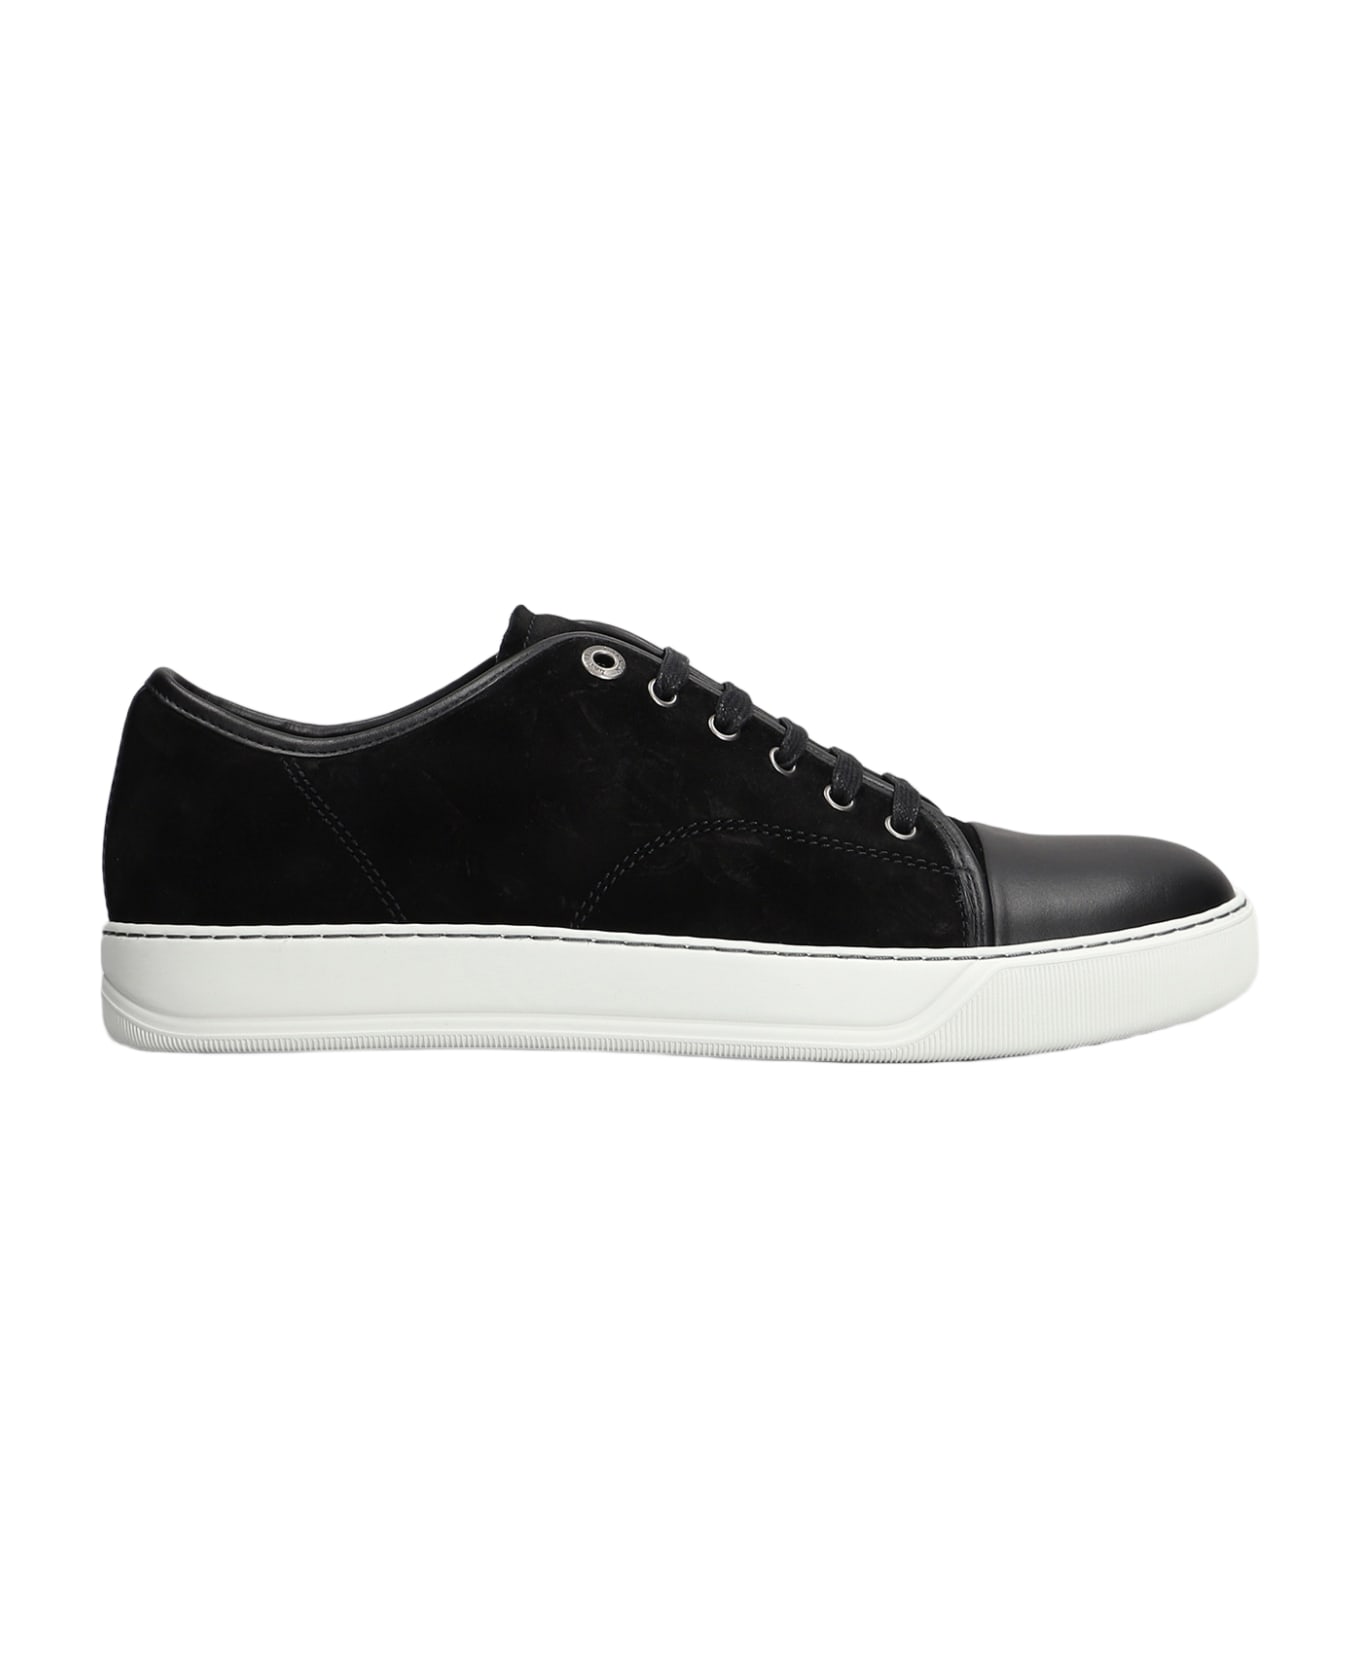 Lanvin Dbb1 Sneakers In Black Suede - black